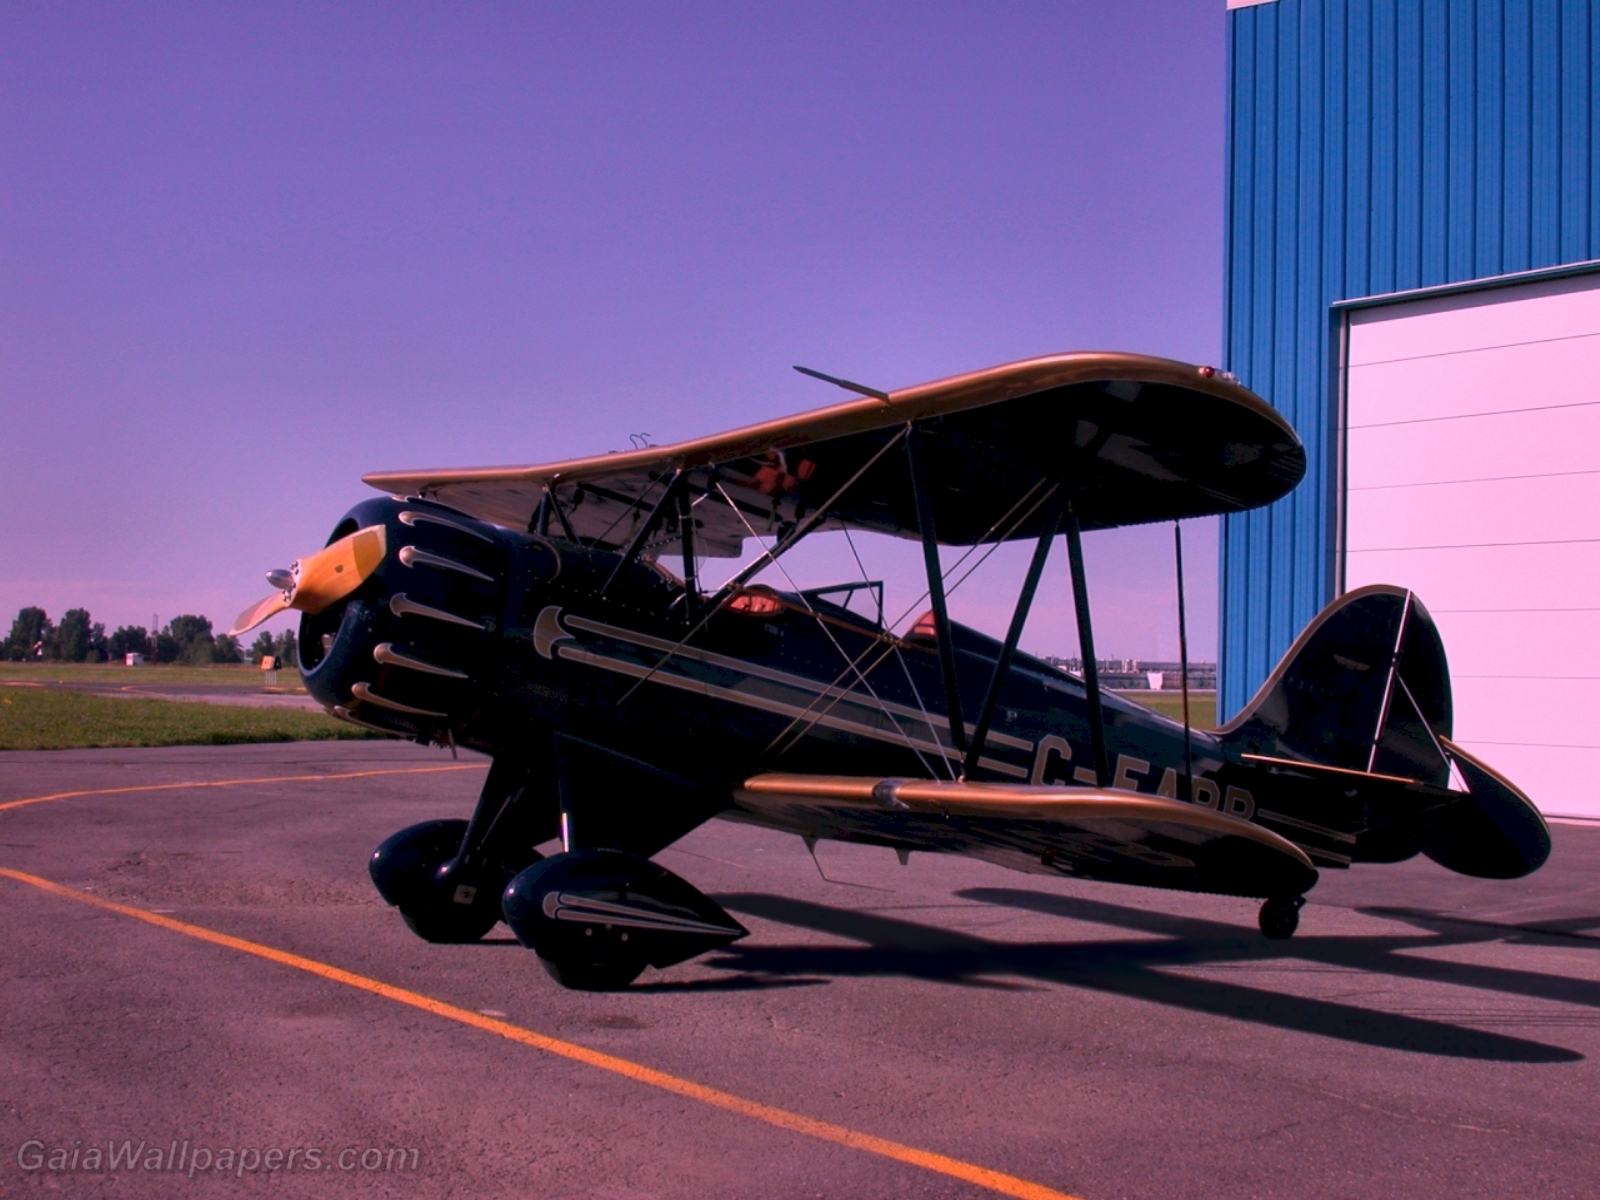 Biplane at Saint-Hubert airport - Free desktop wallpapers